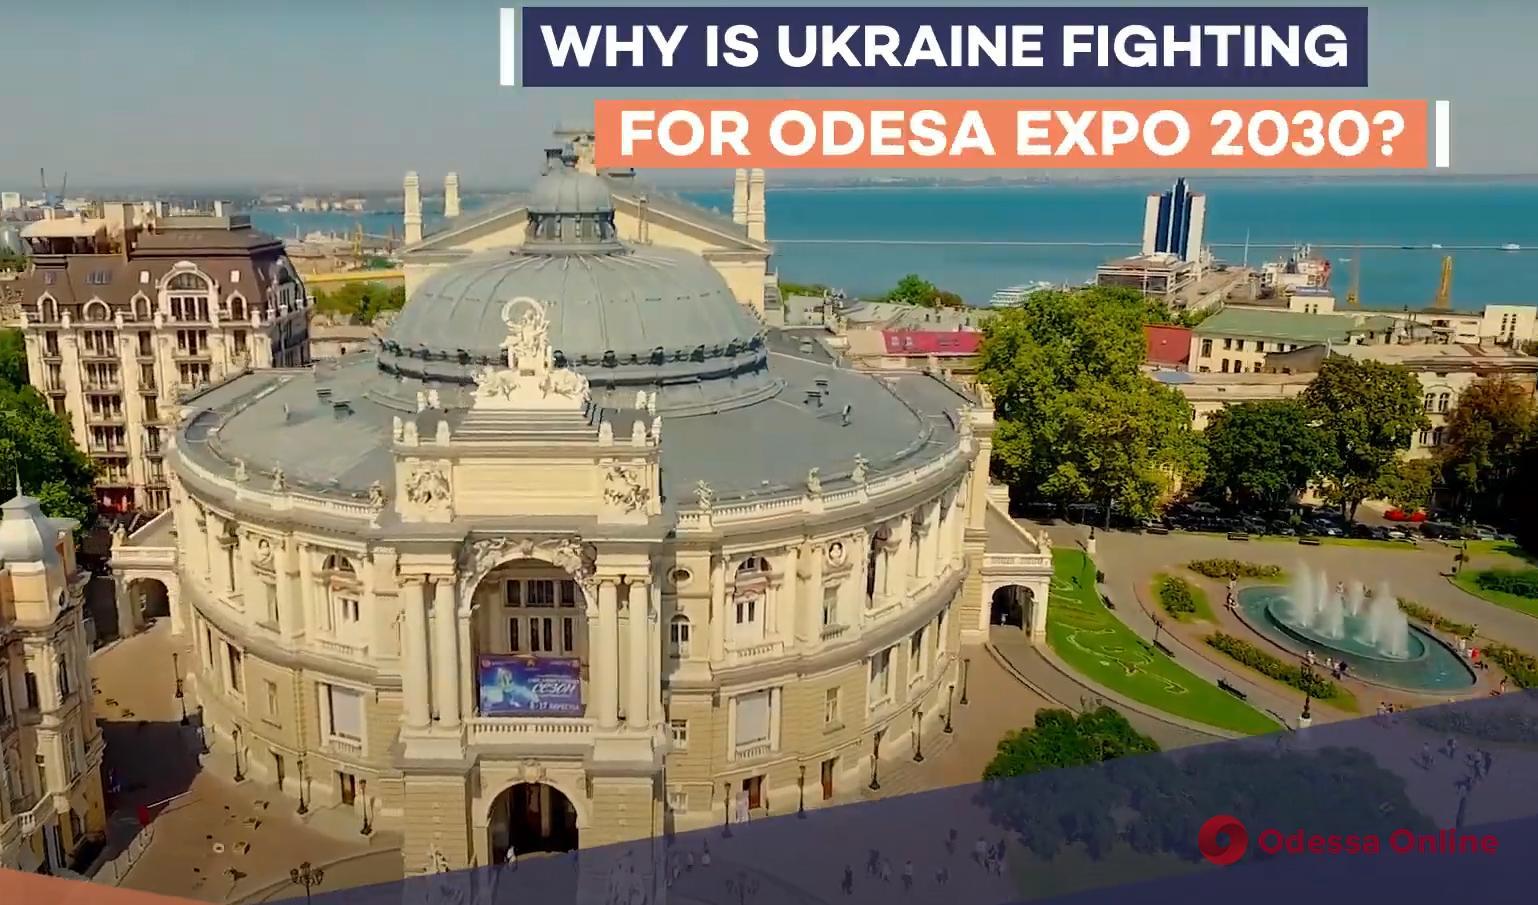 В Одессе готовятся к борьбе за ЕХРО-2030 и сняли презентационное видео